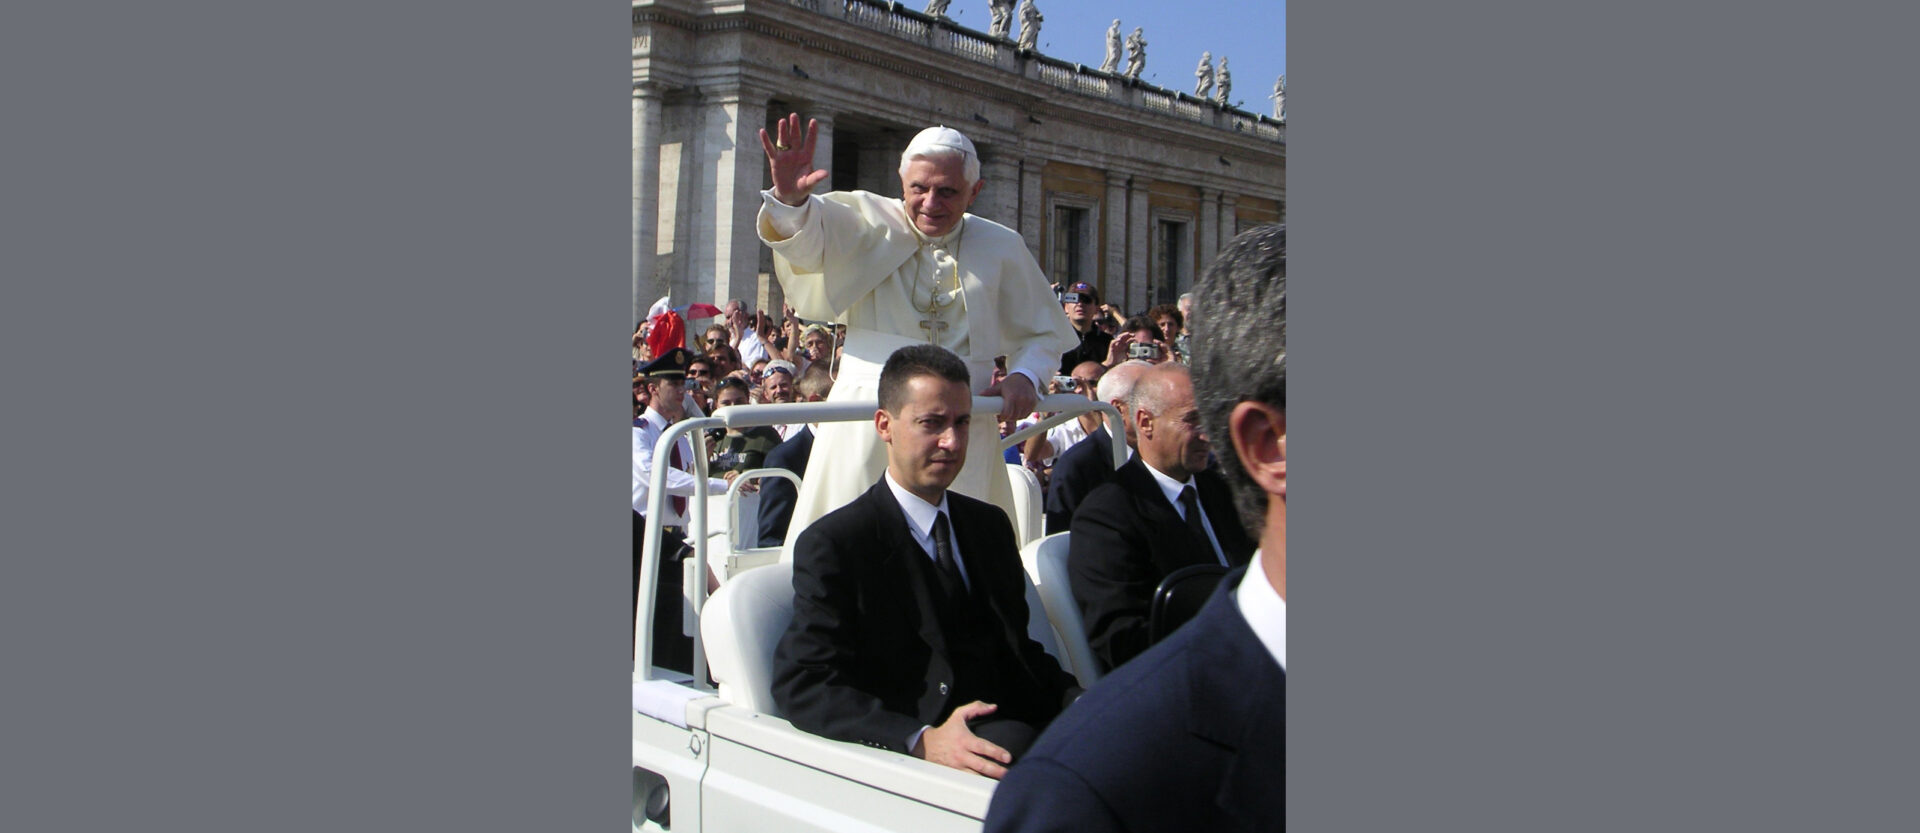 Paolo Gabriele a servi de majordome au pape Benoît XVI pendant six ans | Wikimedia - 	UzziBerlin - CC BY-SA 4.0